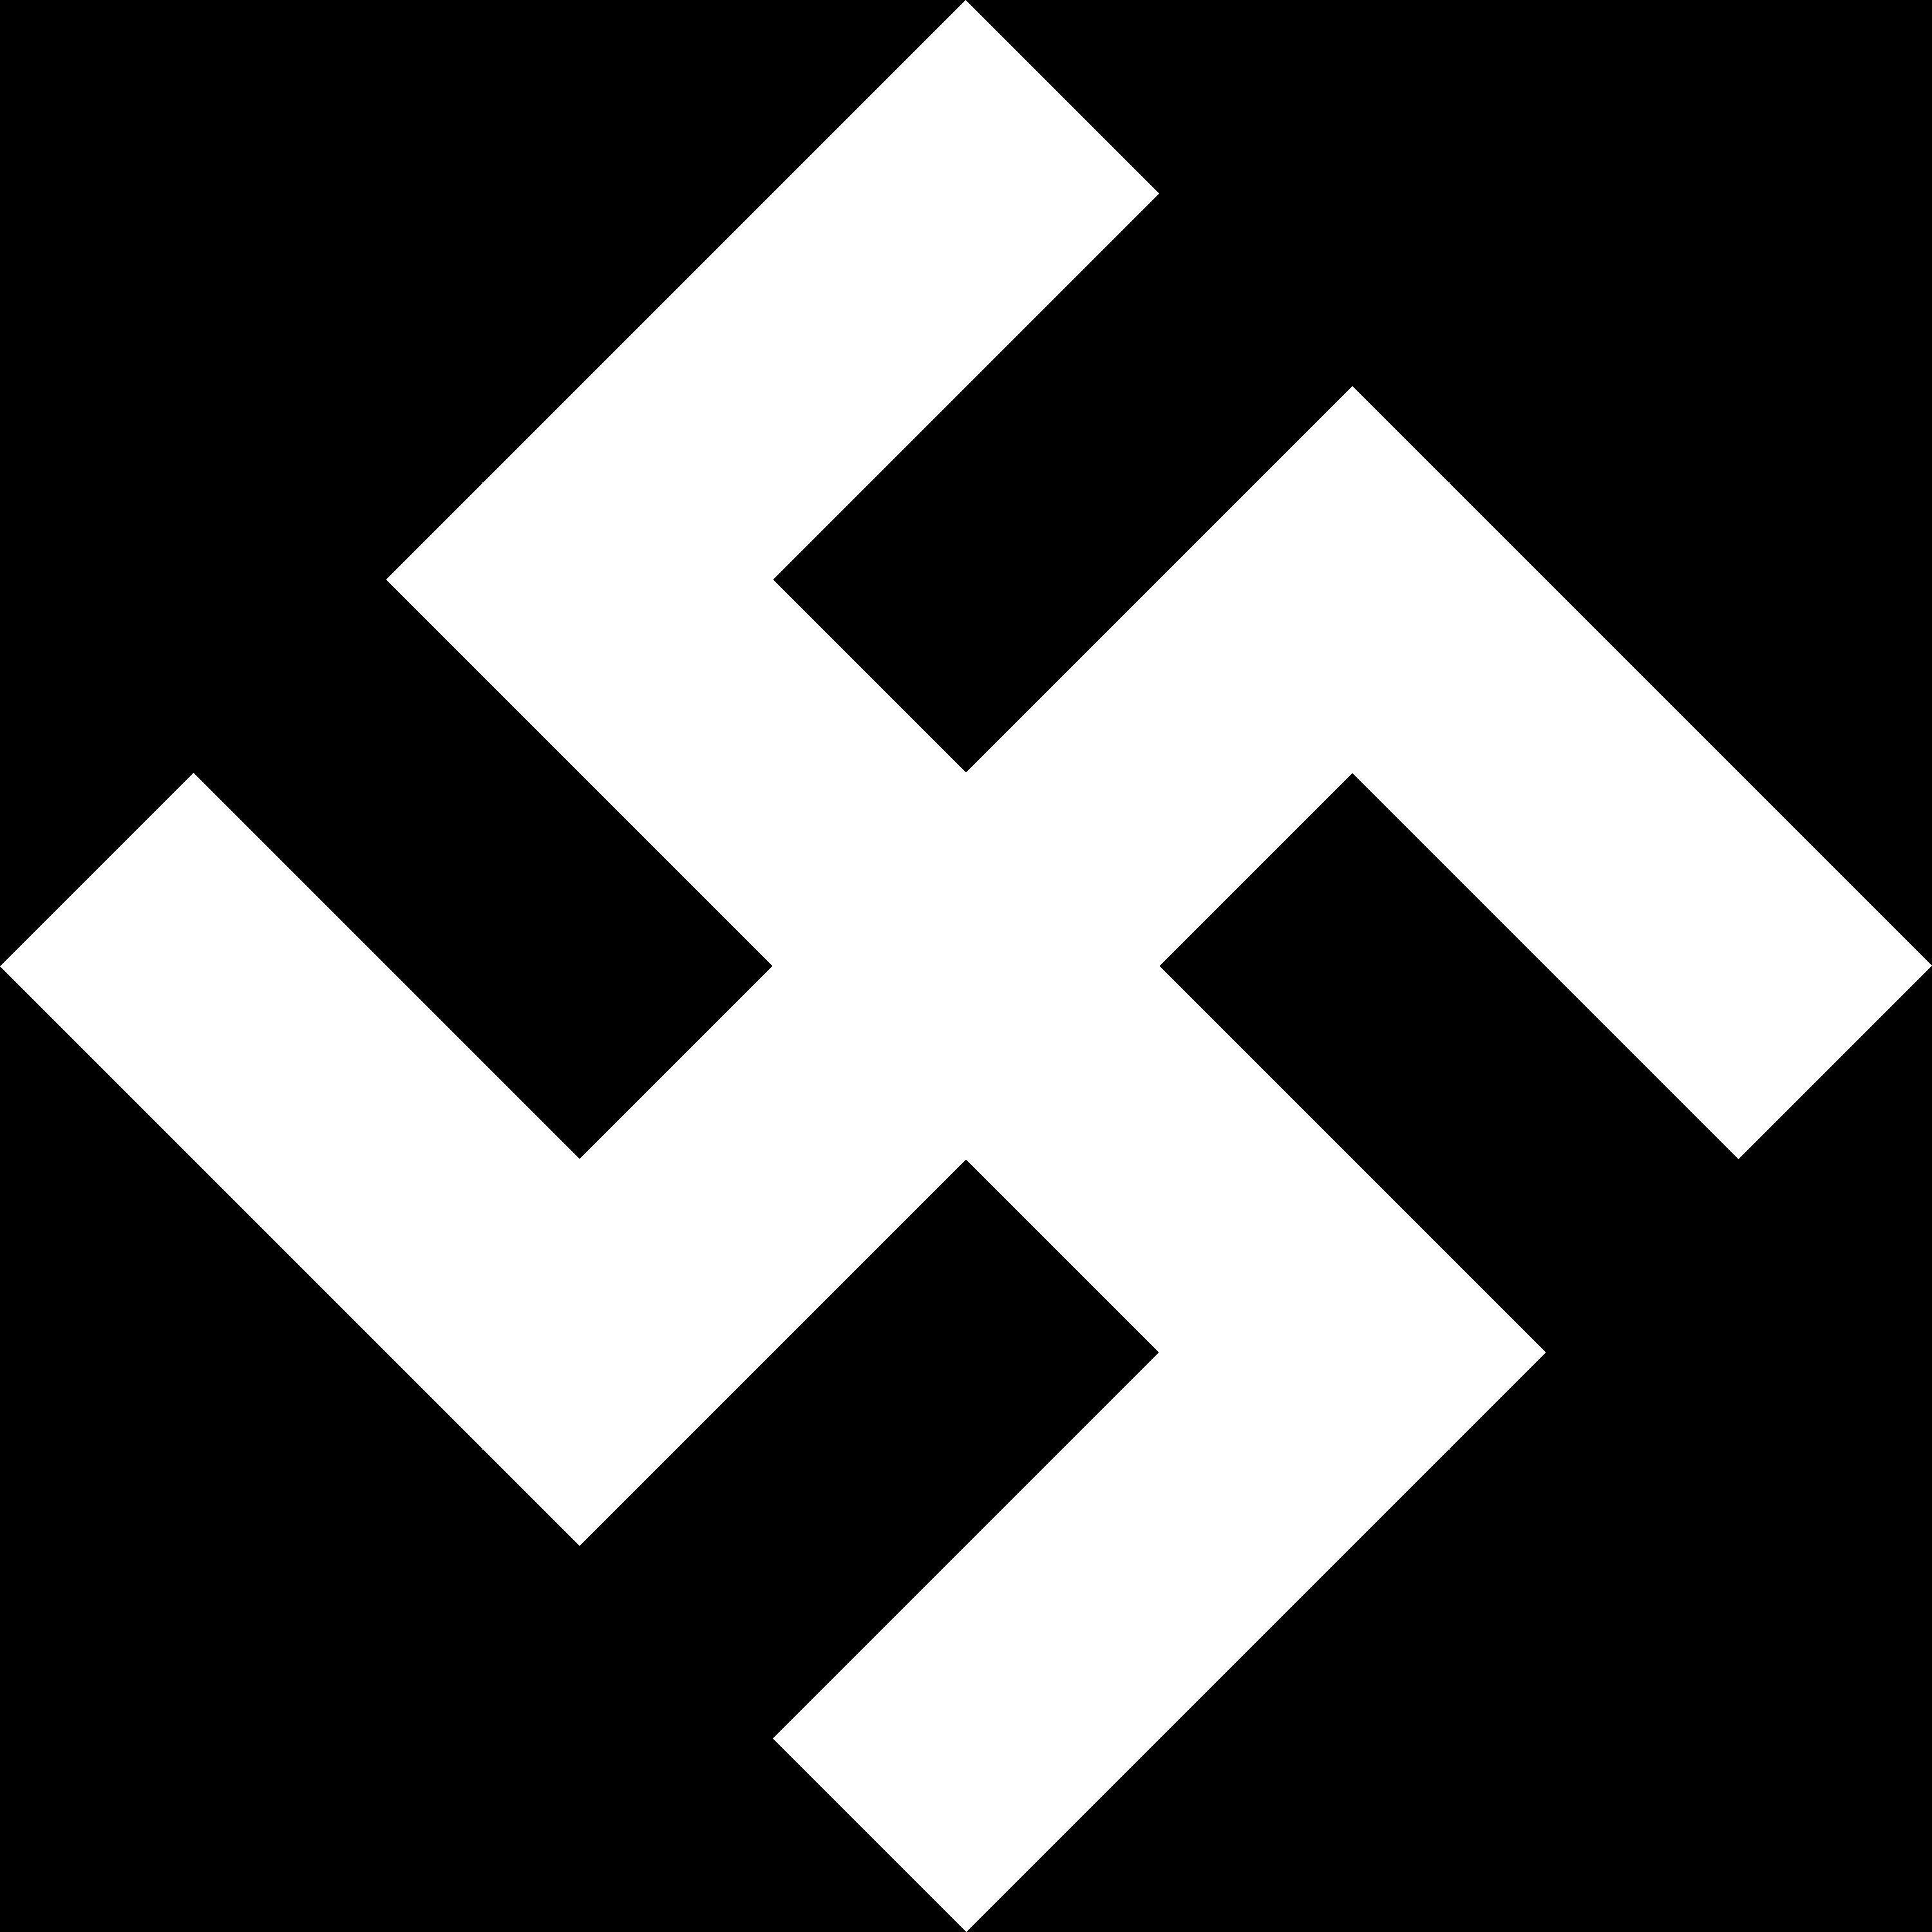 Nazi Logo - Nazi Logos